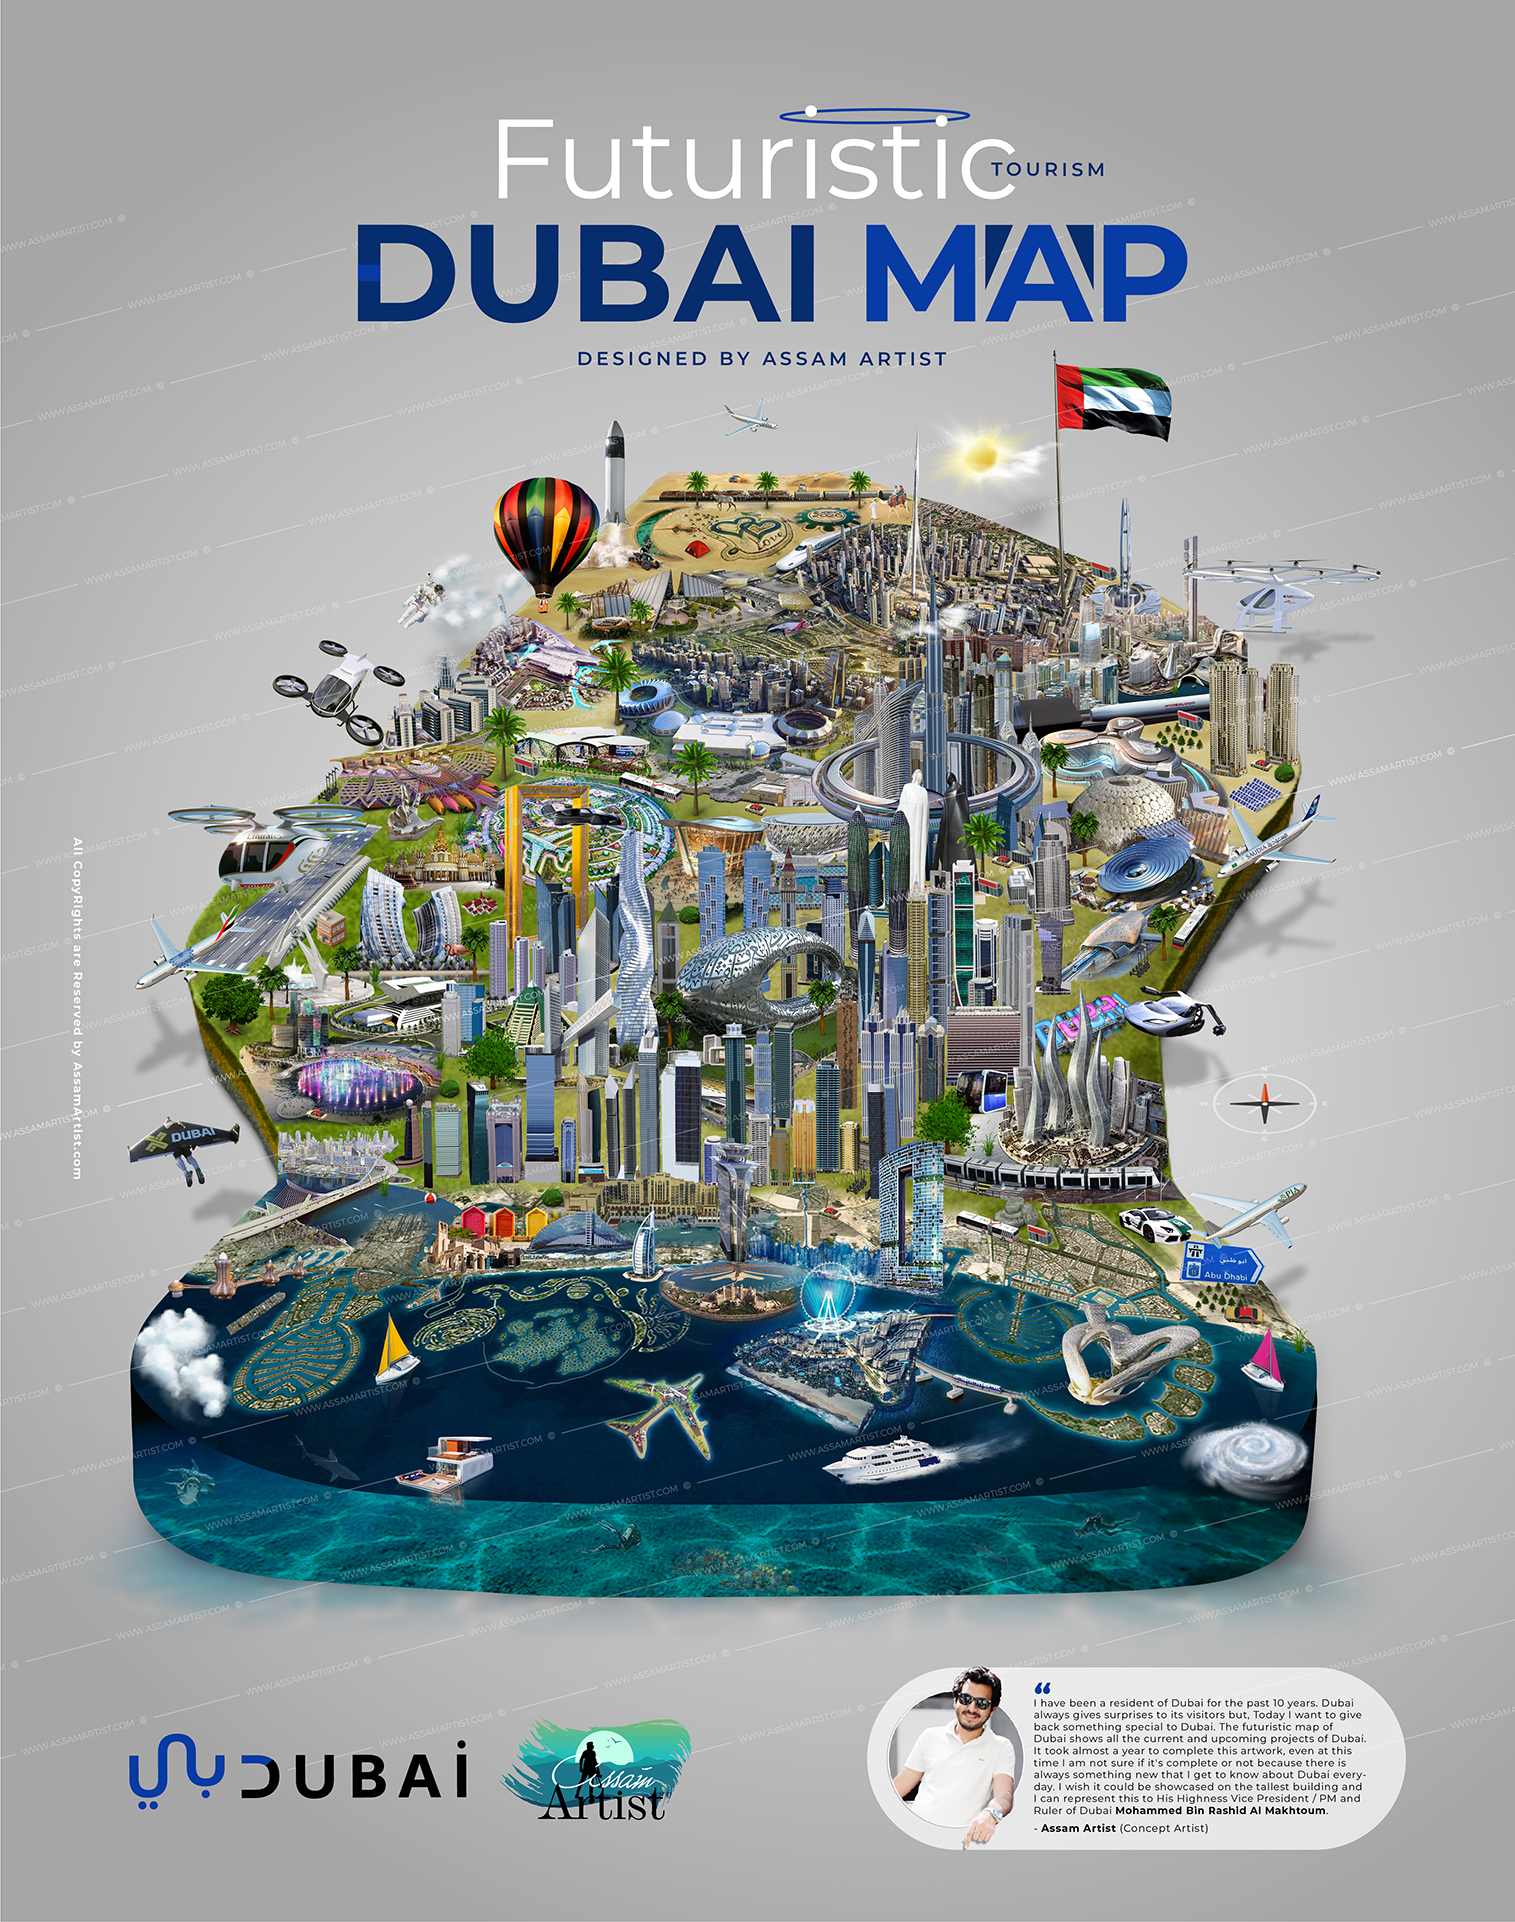 Dubai Futuristic Tourism Map